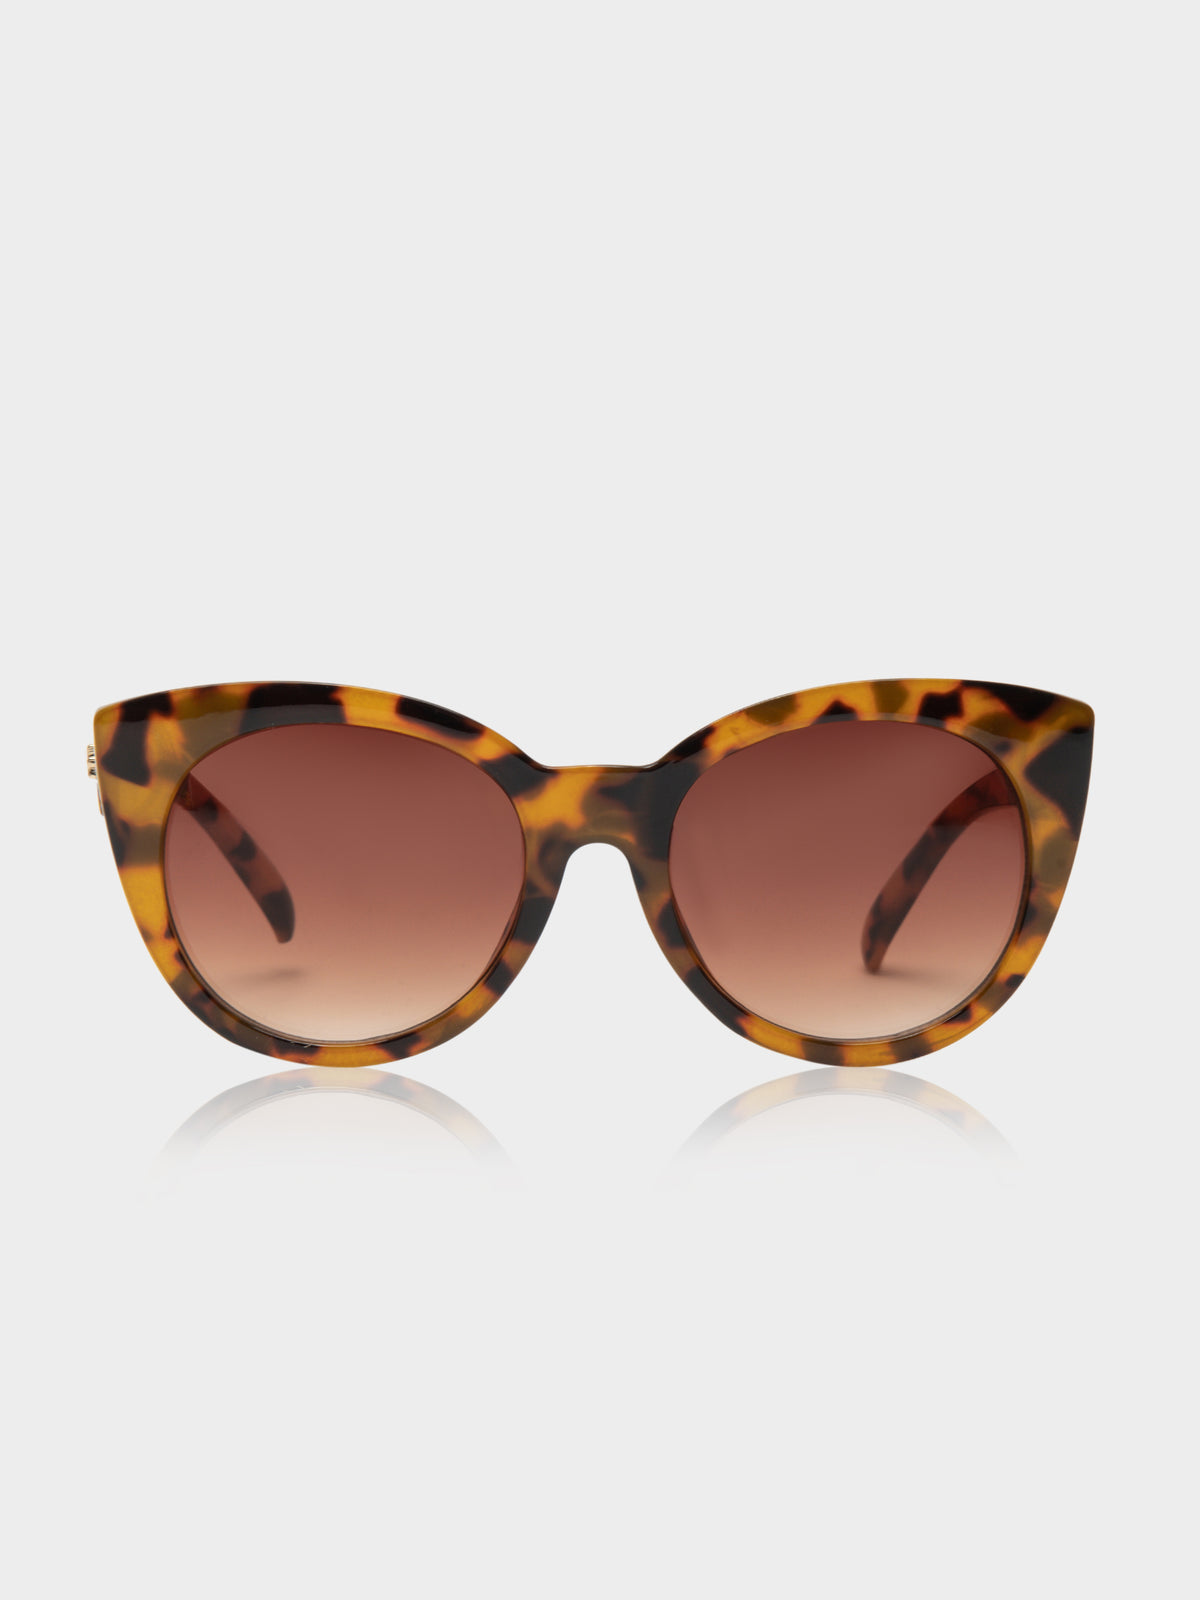 Beatrix Round Cat-Eye Sunglasses in Tortoiseshell